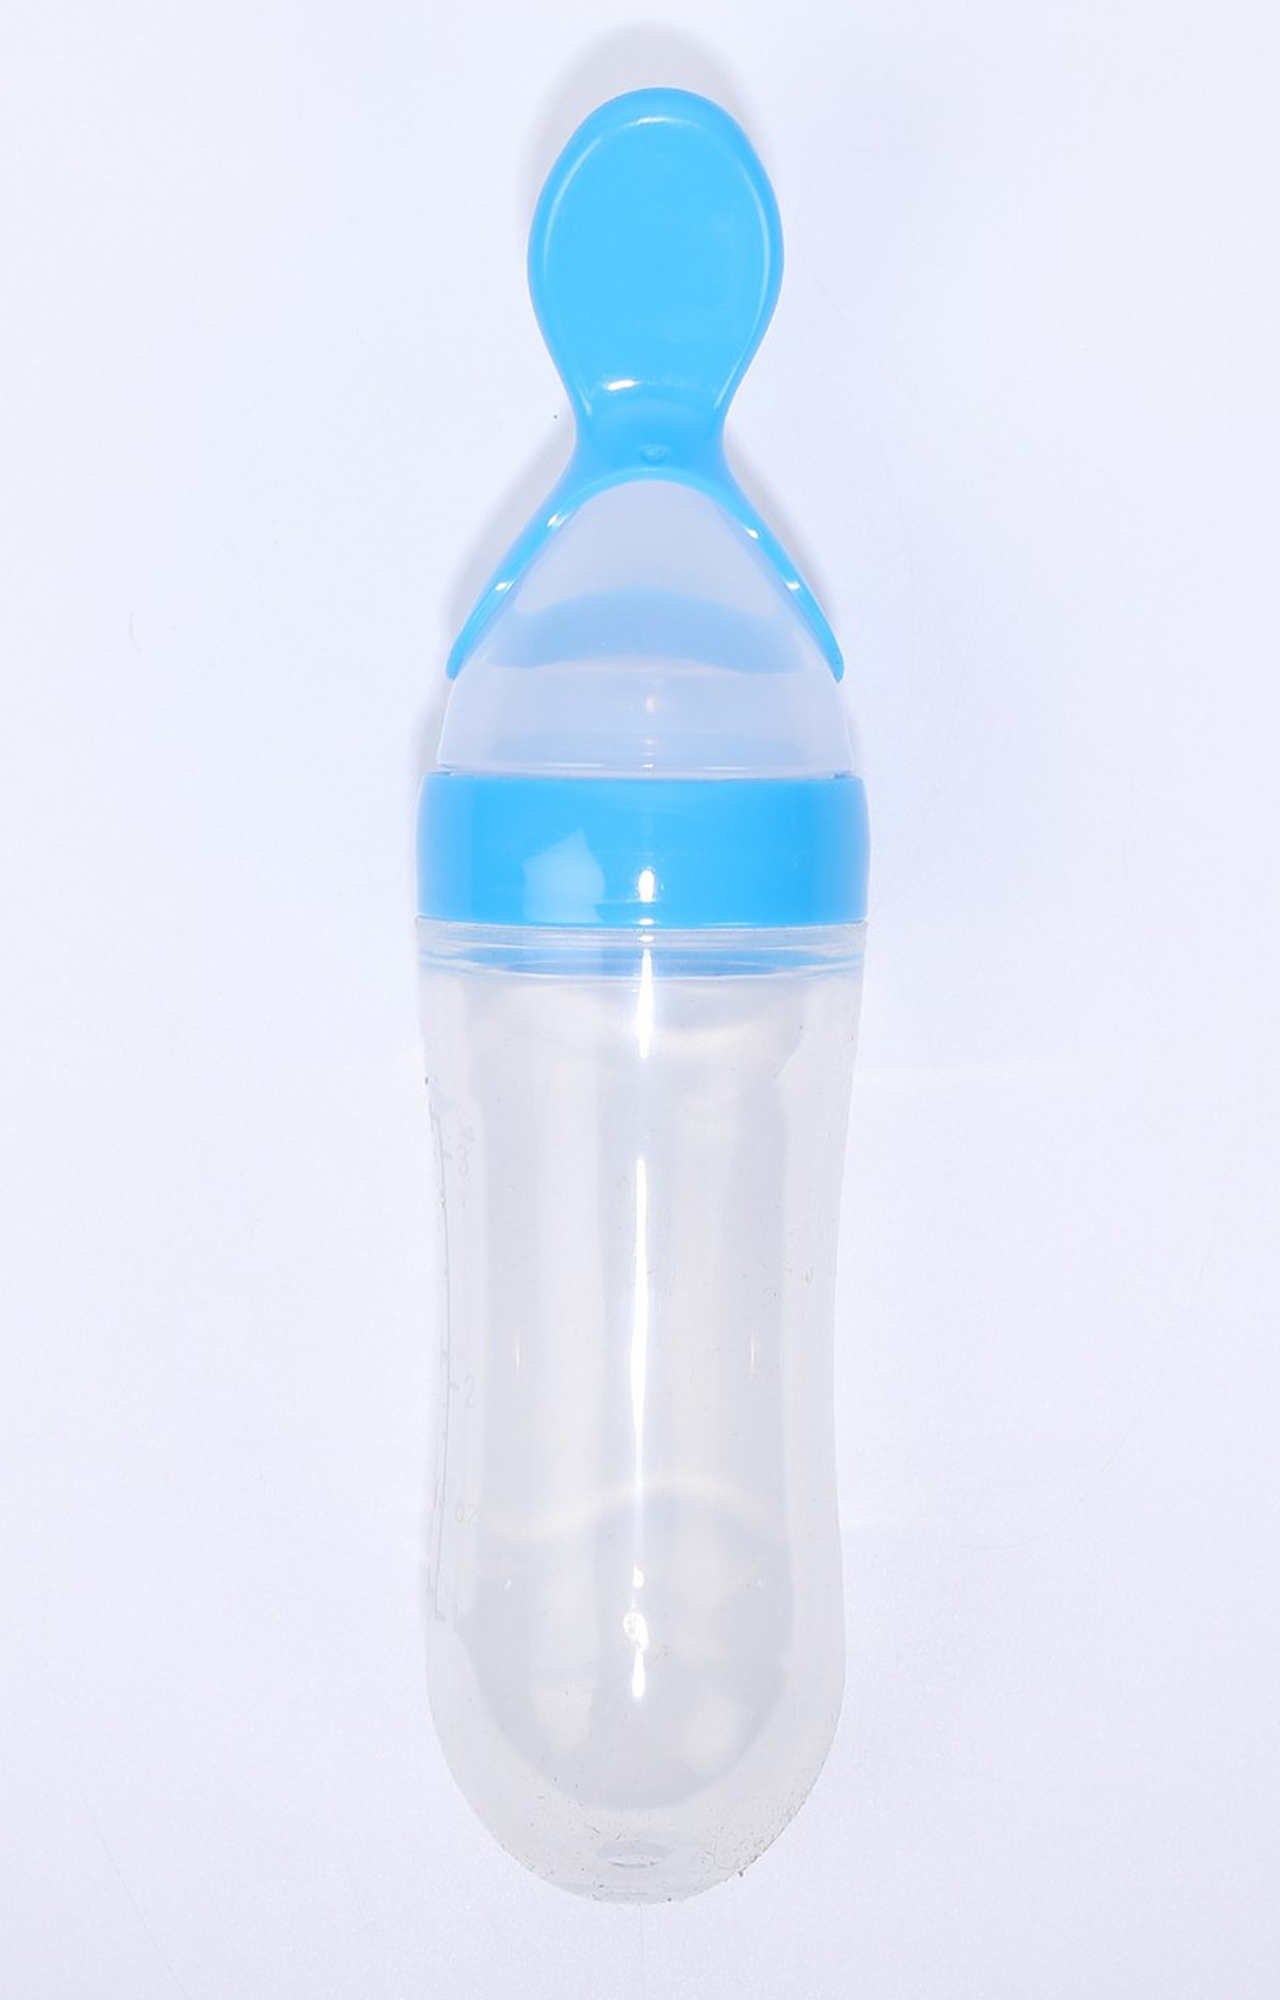 Kidbea | Kidbea Blue Feeding Bottle